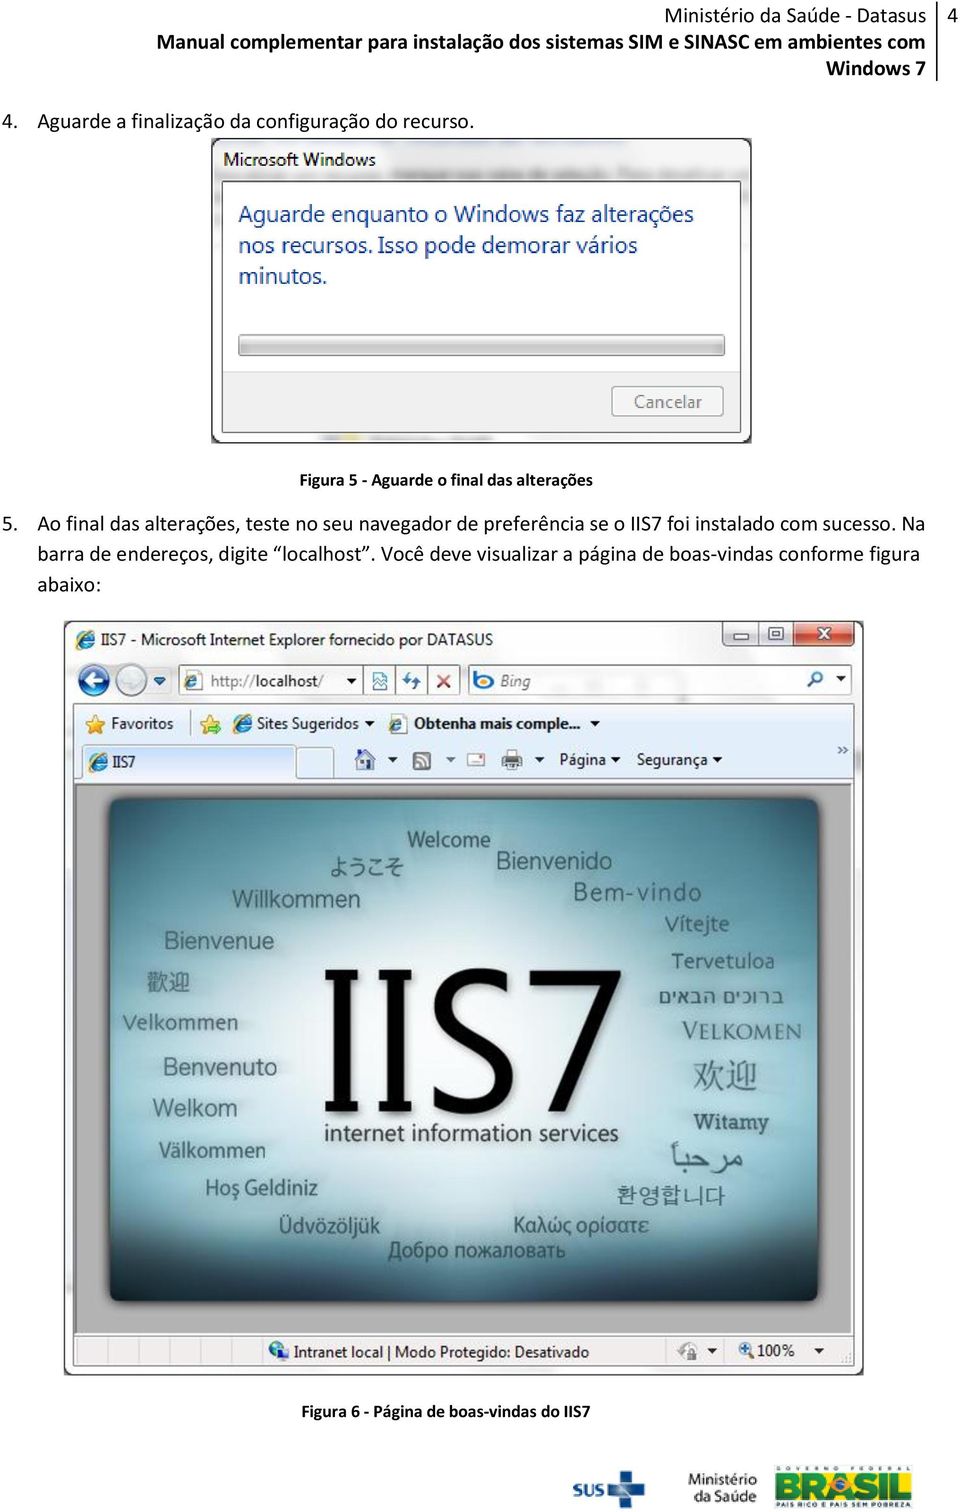 Ao final das alterações, teste no seu navegador de preferência se o IIS7 foi instalado